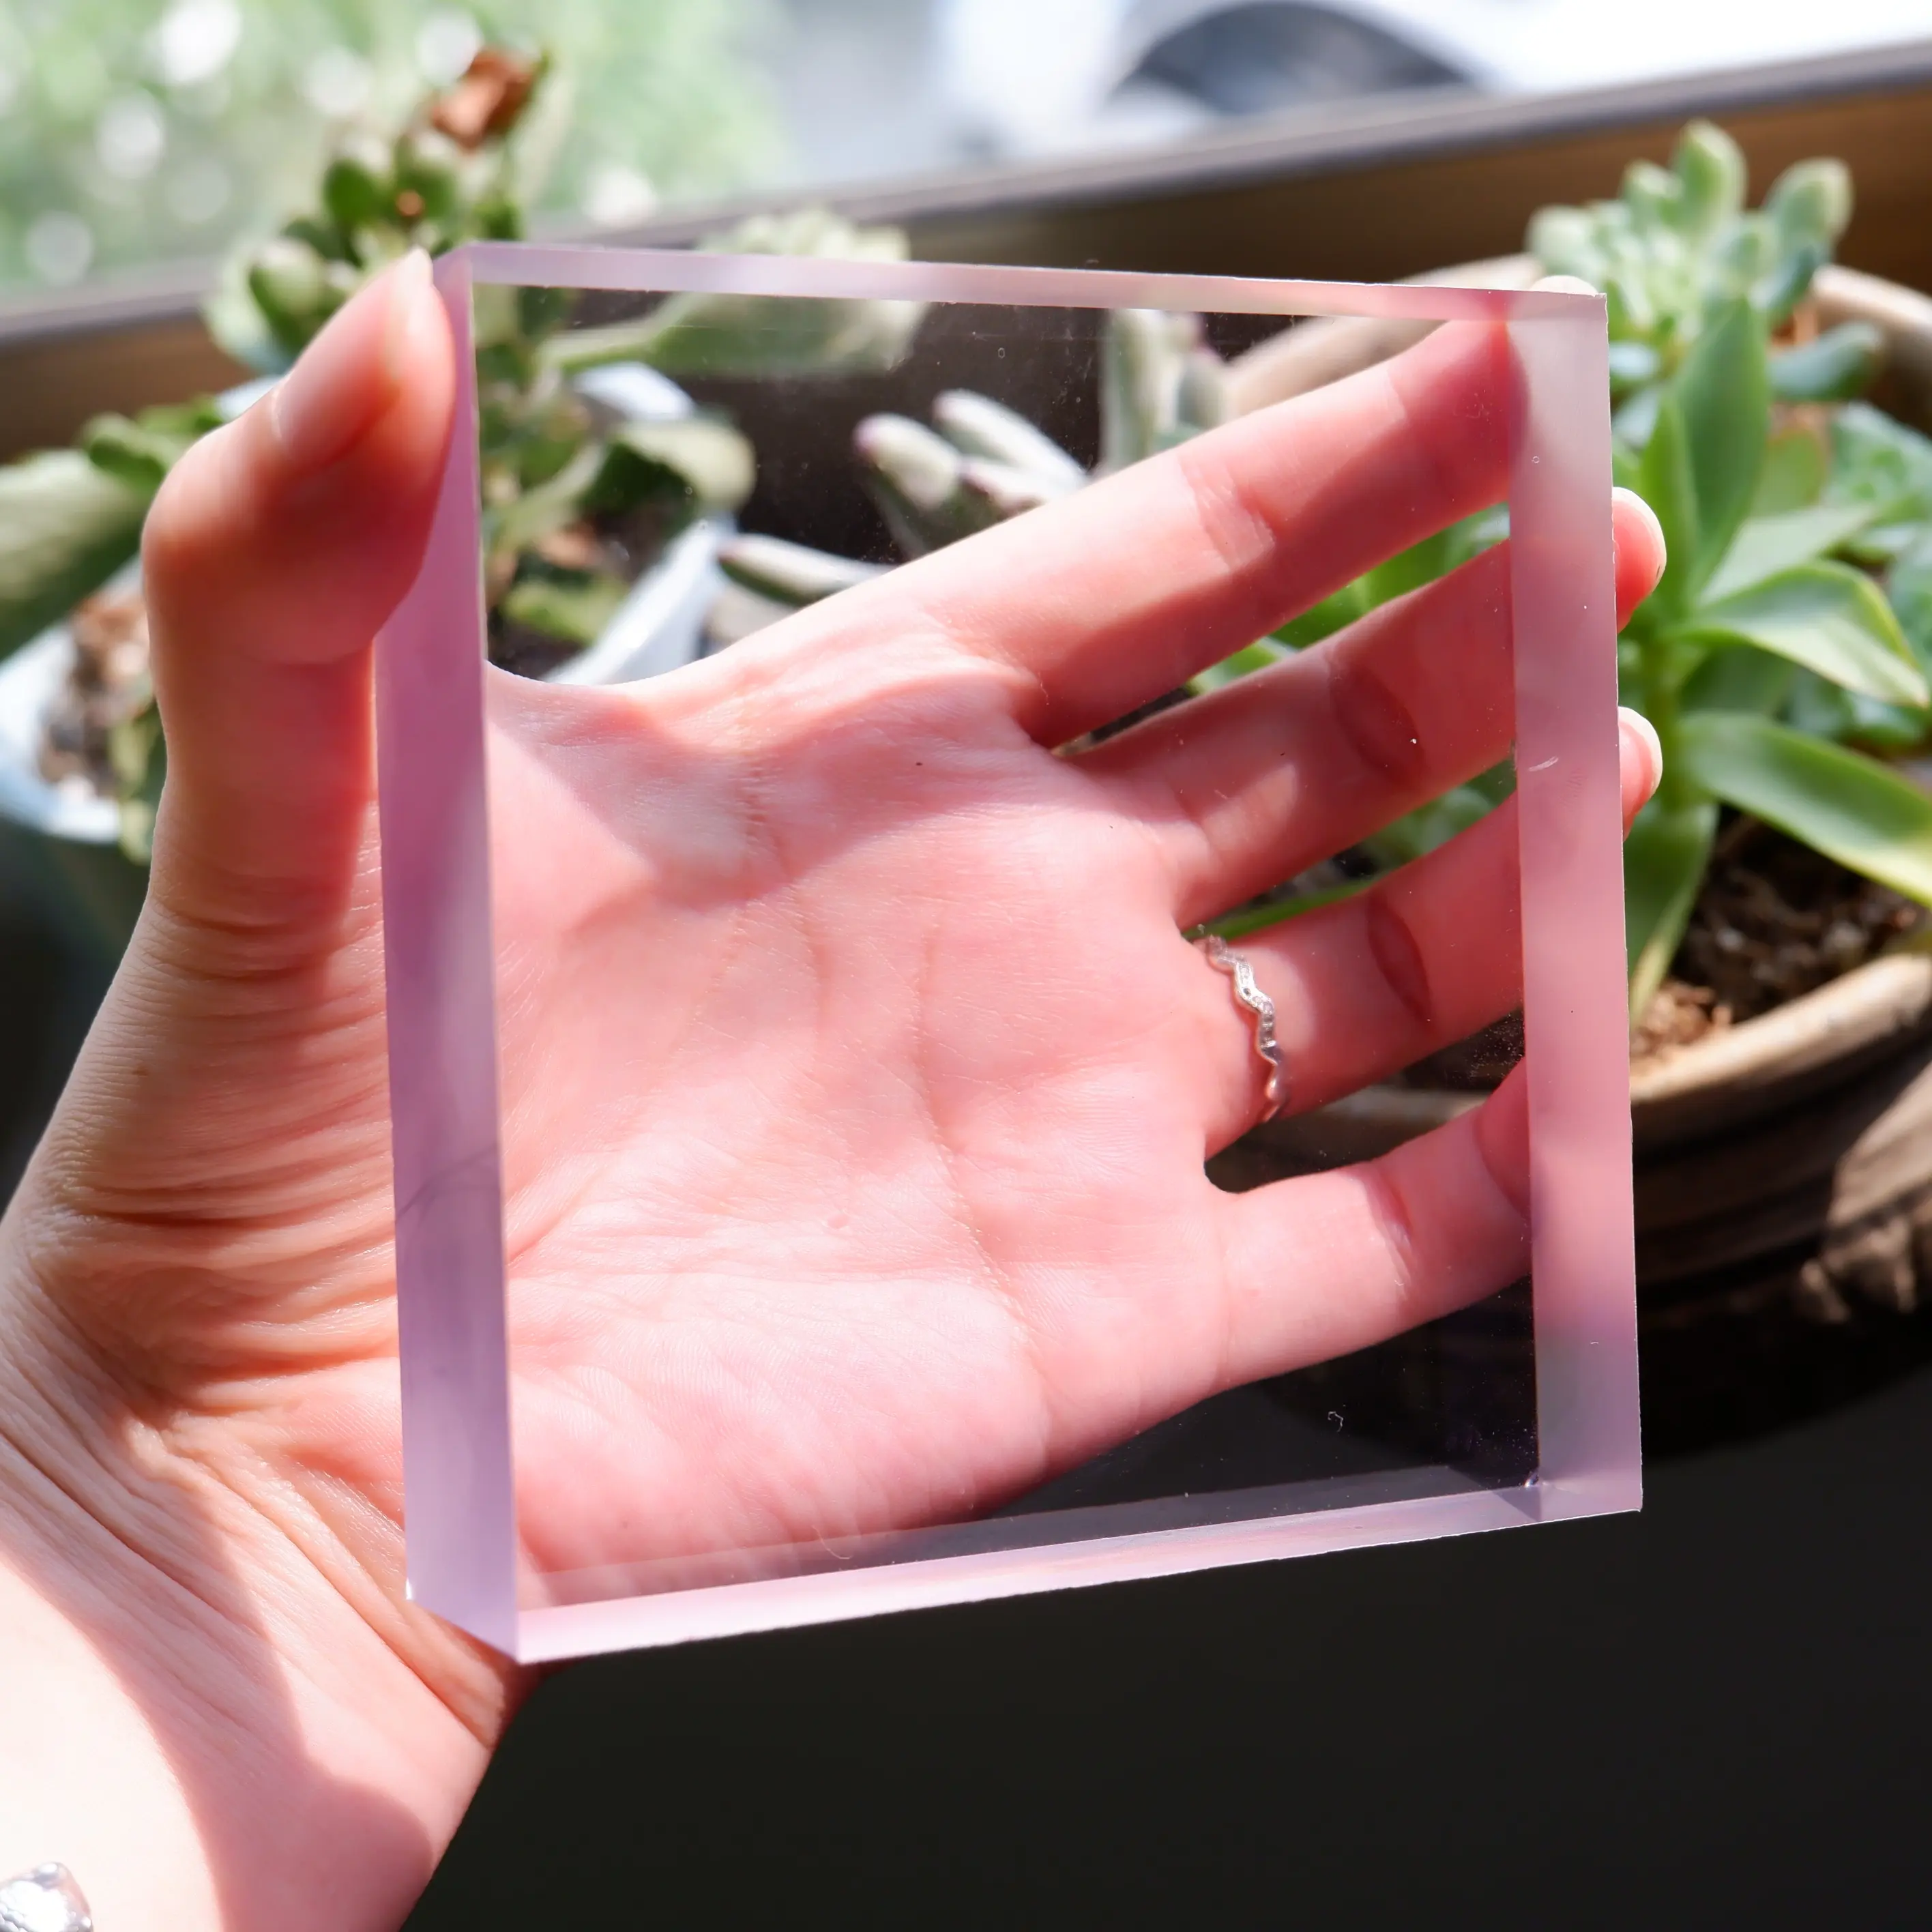 Folha de policarbonato de 35mm altamente resistente e transparente